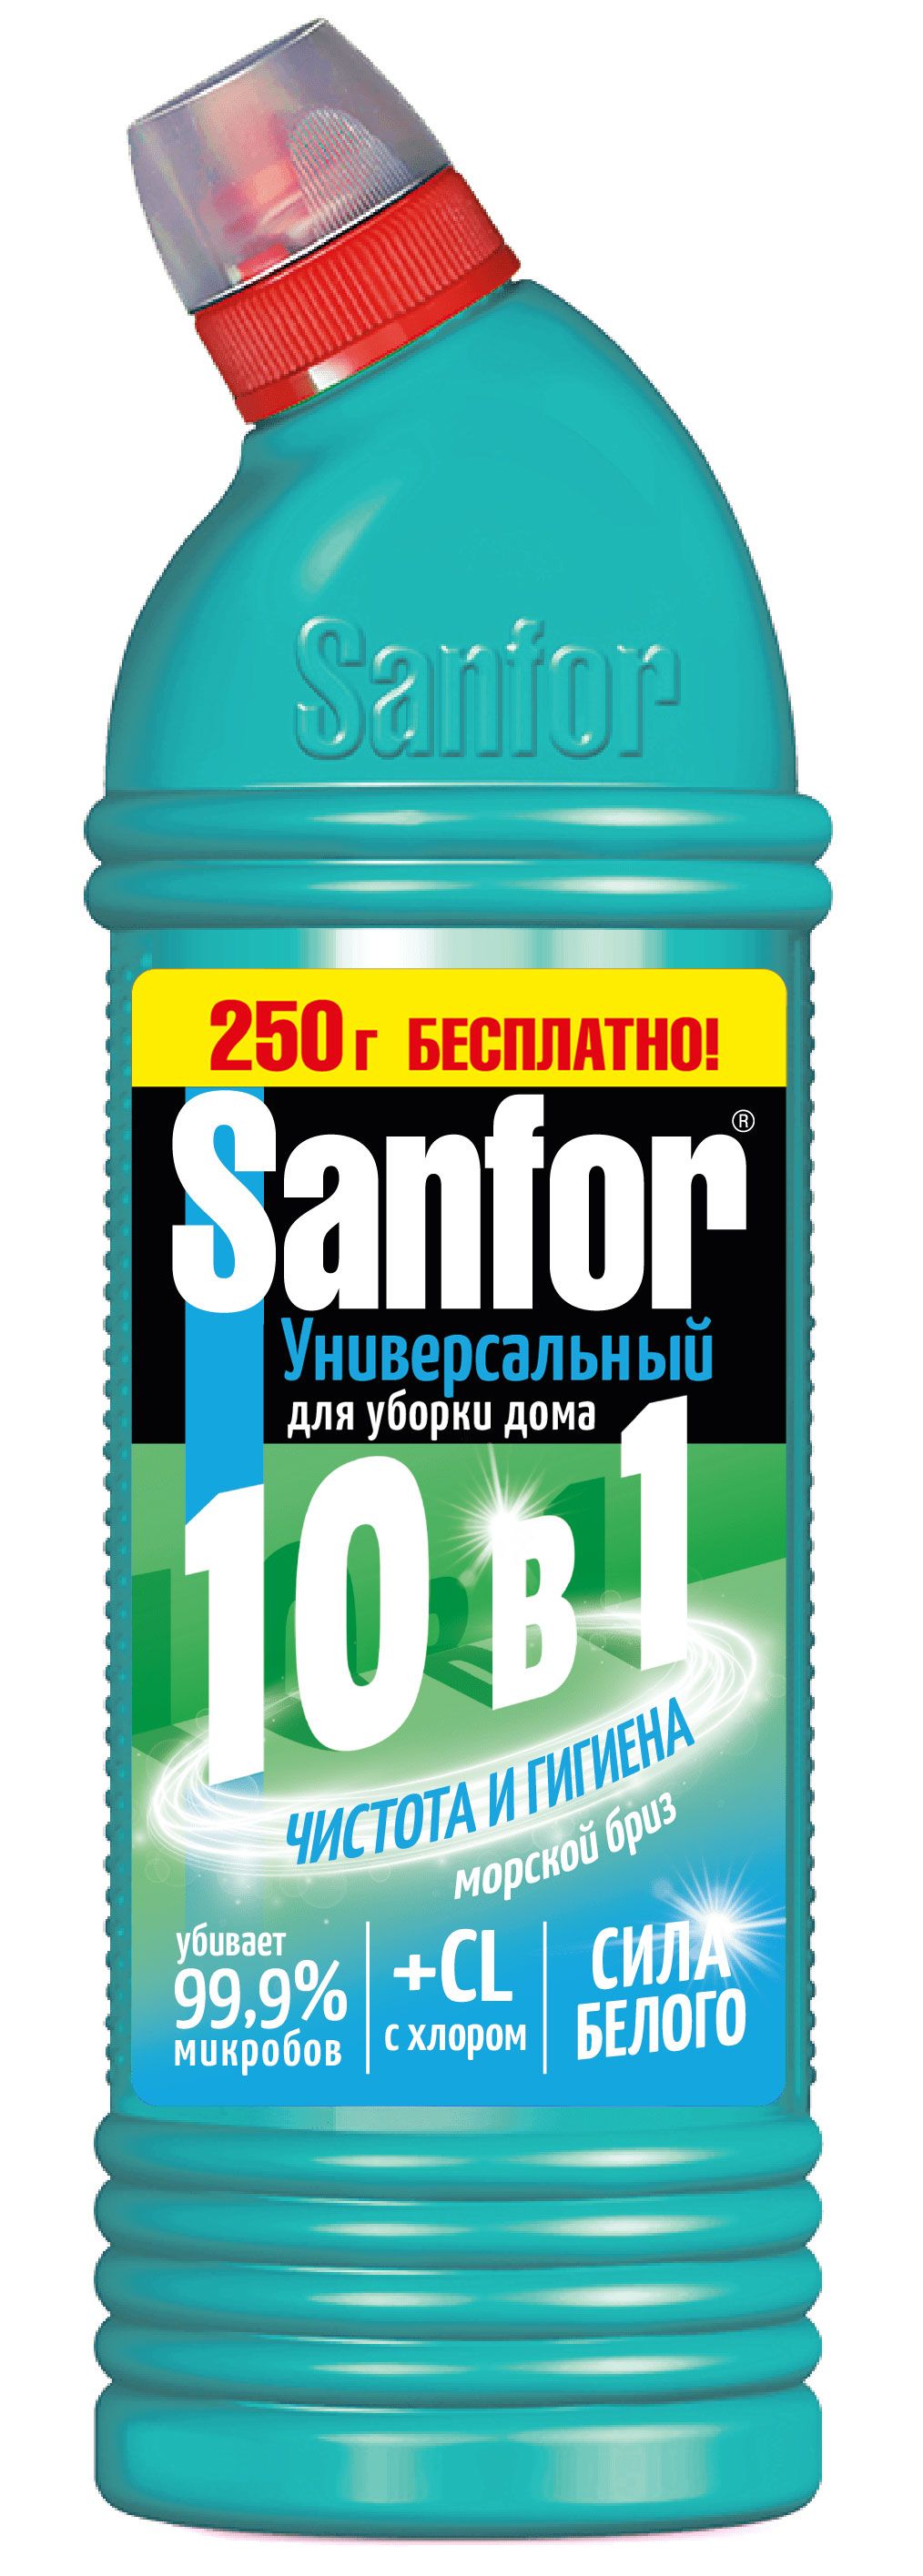 Sanfor universal 10в1 средство для чистки и дезинф морской бриз 1л 750+250 мл бесплатно